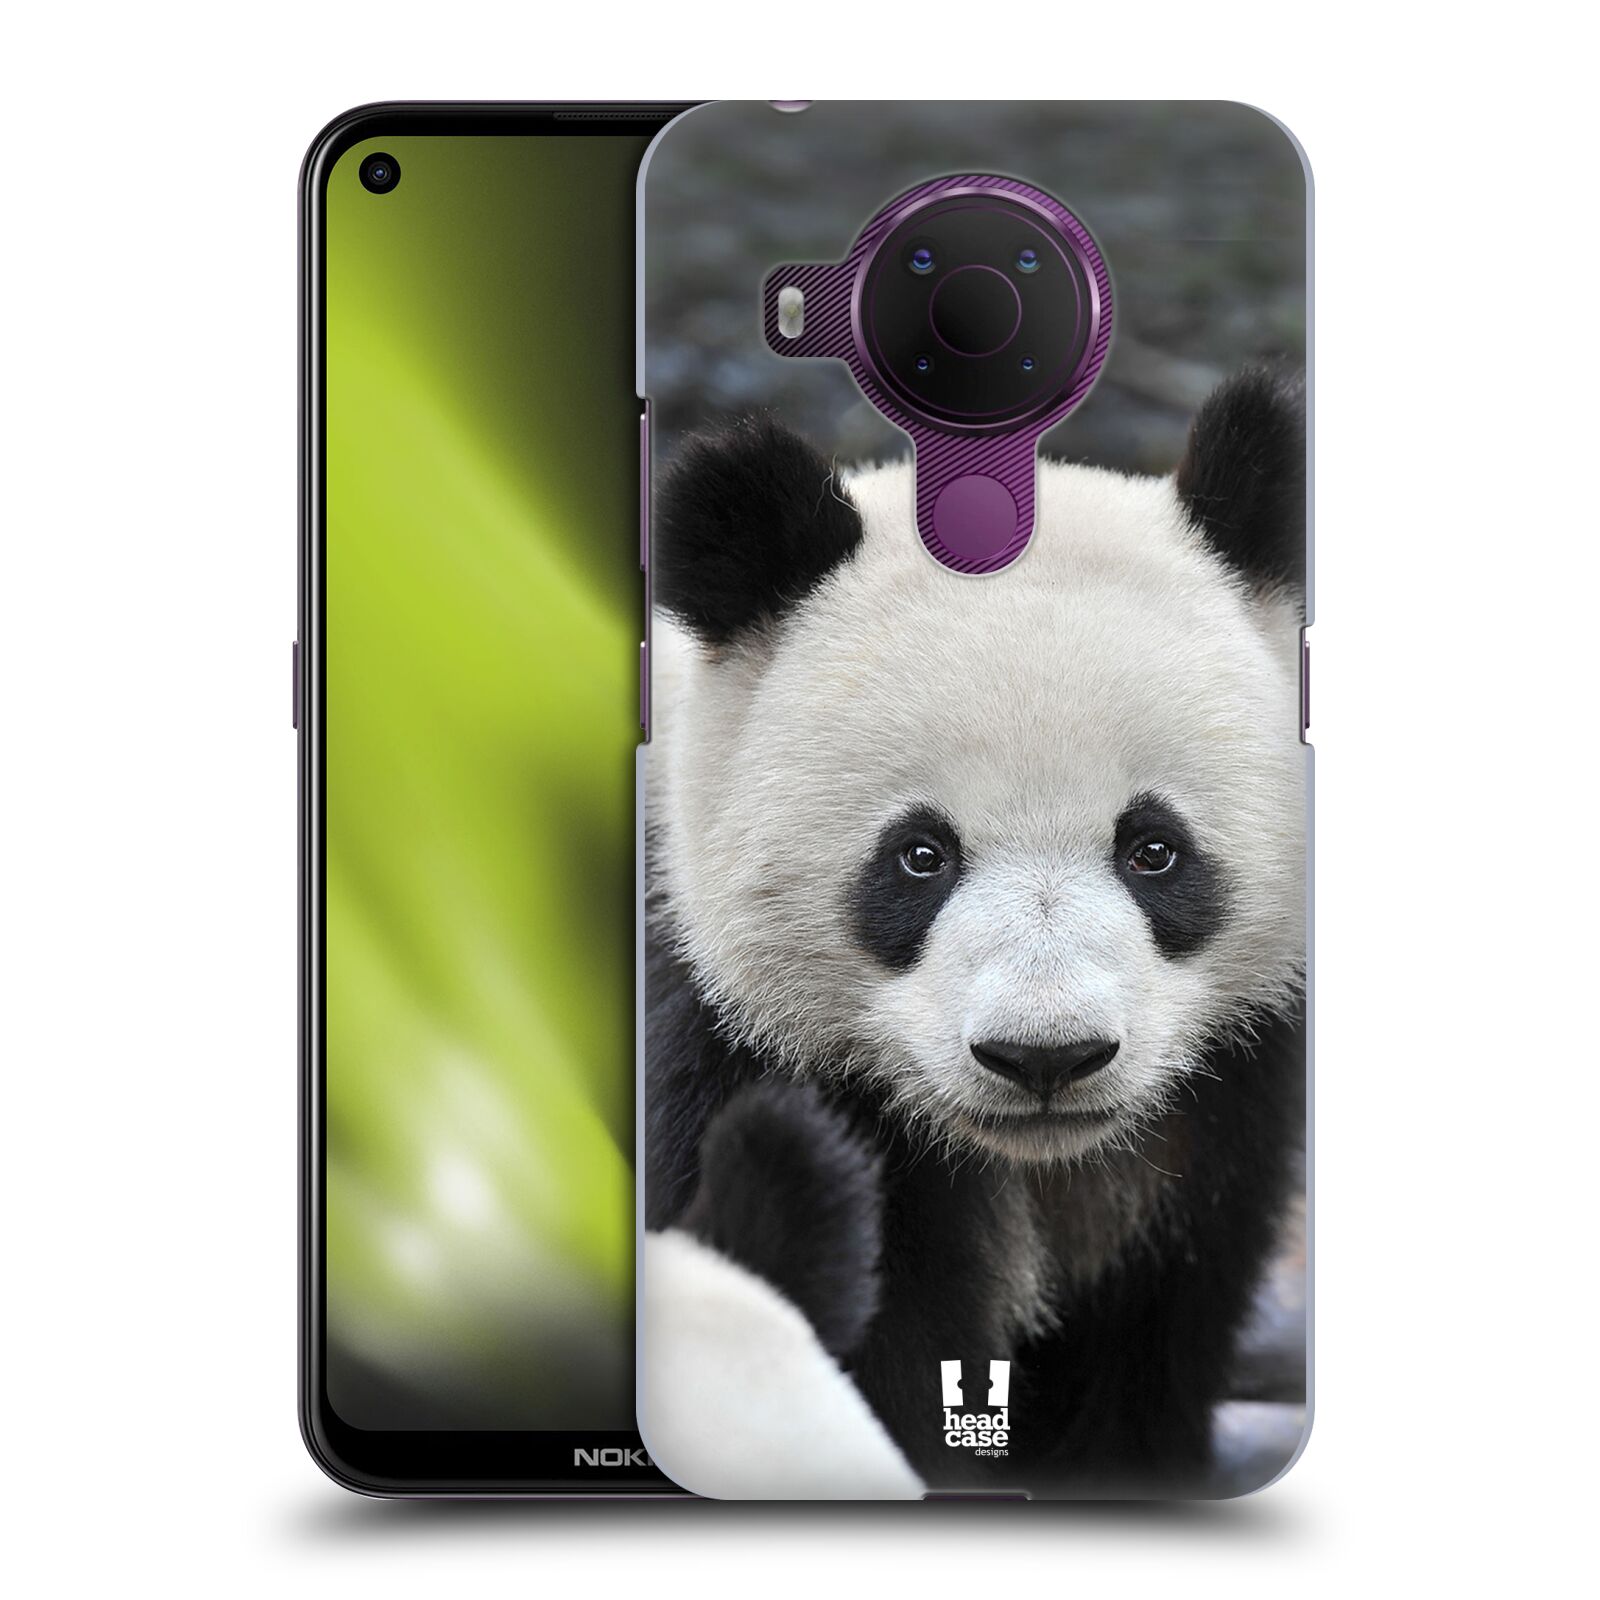 Zadní obal pro mobil Nokia 5.4 - HEAD CASE - Svět zvířat medvěd panda